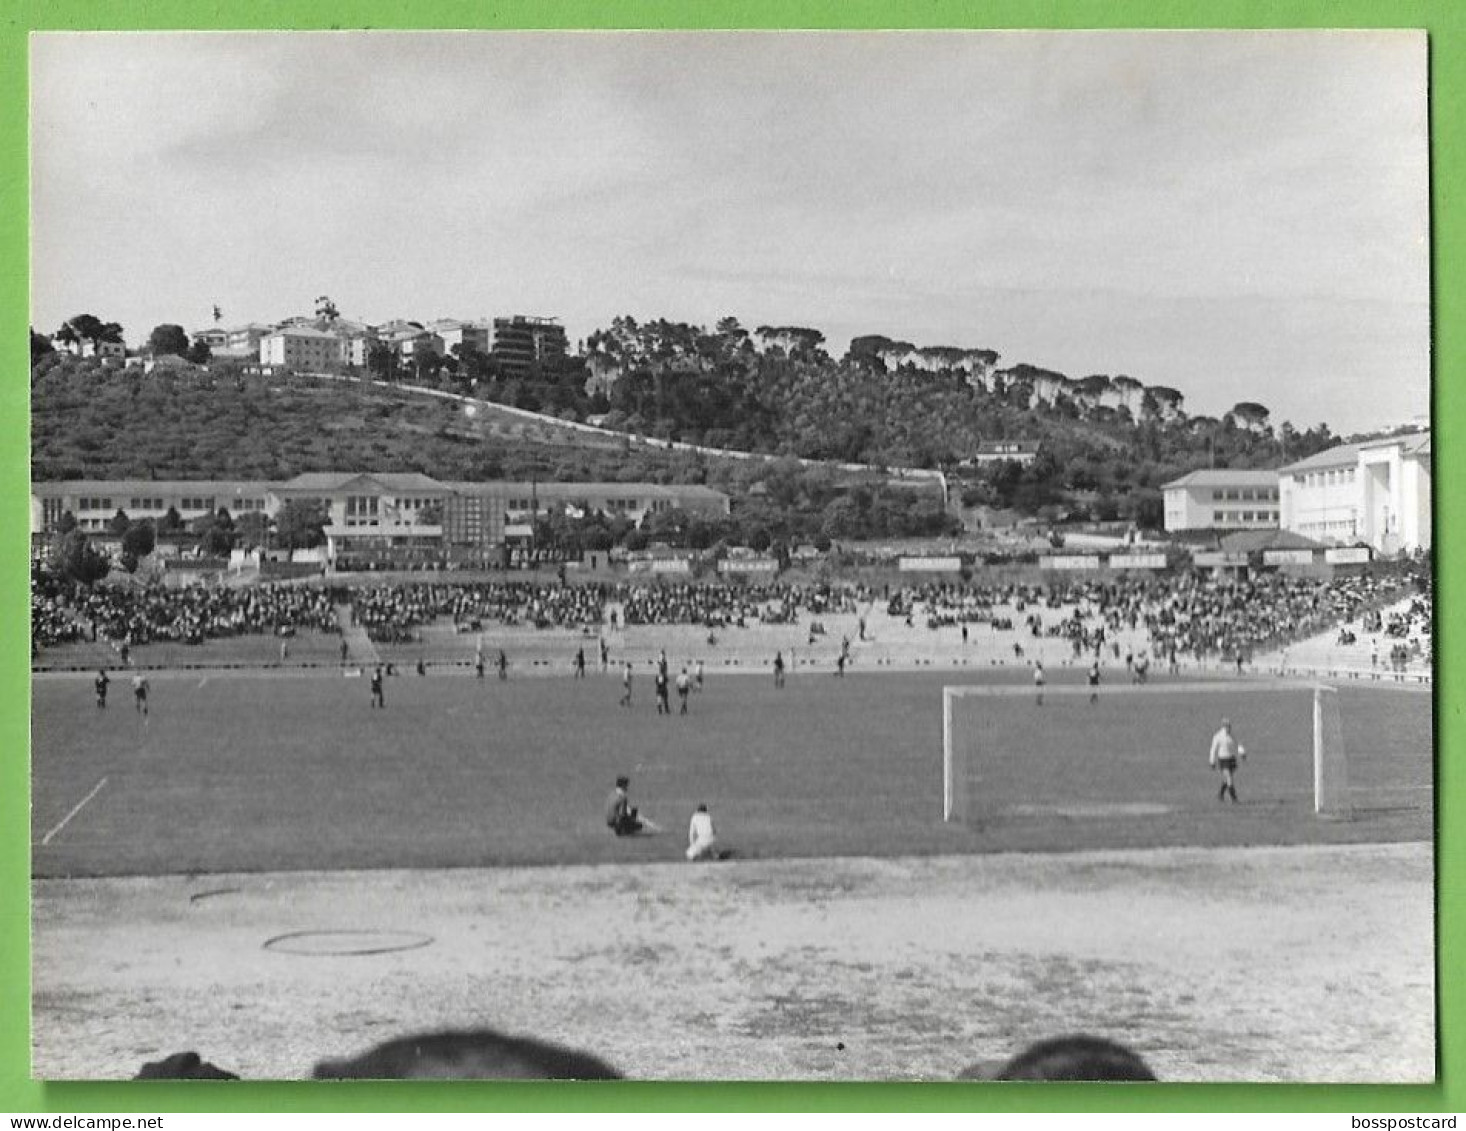 Coimbra - REAL PHOTO - Estádio De Futebol Da Académica - Stadium - Football - Portugal - Stadiums